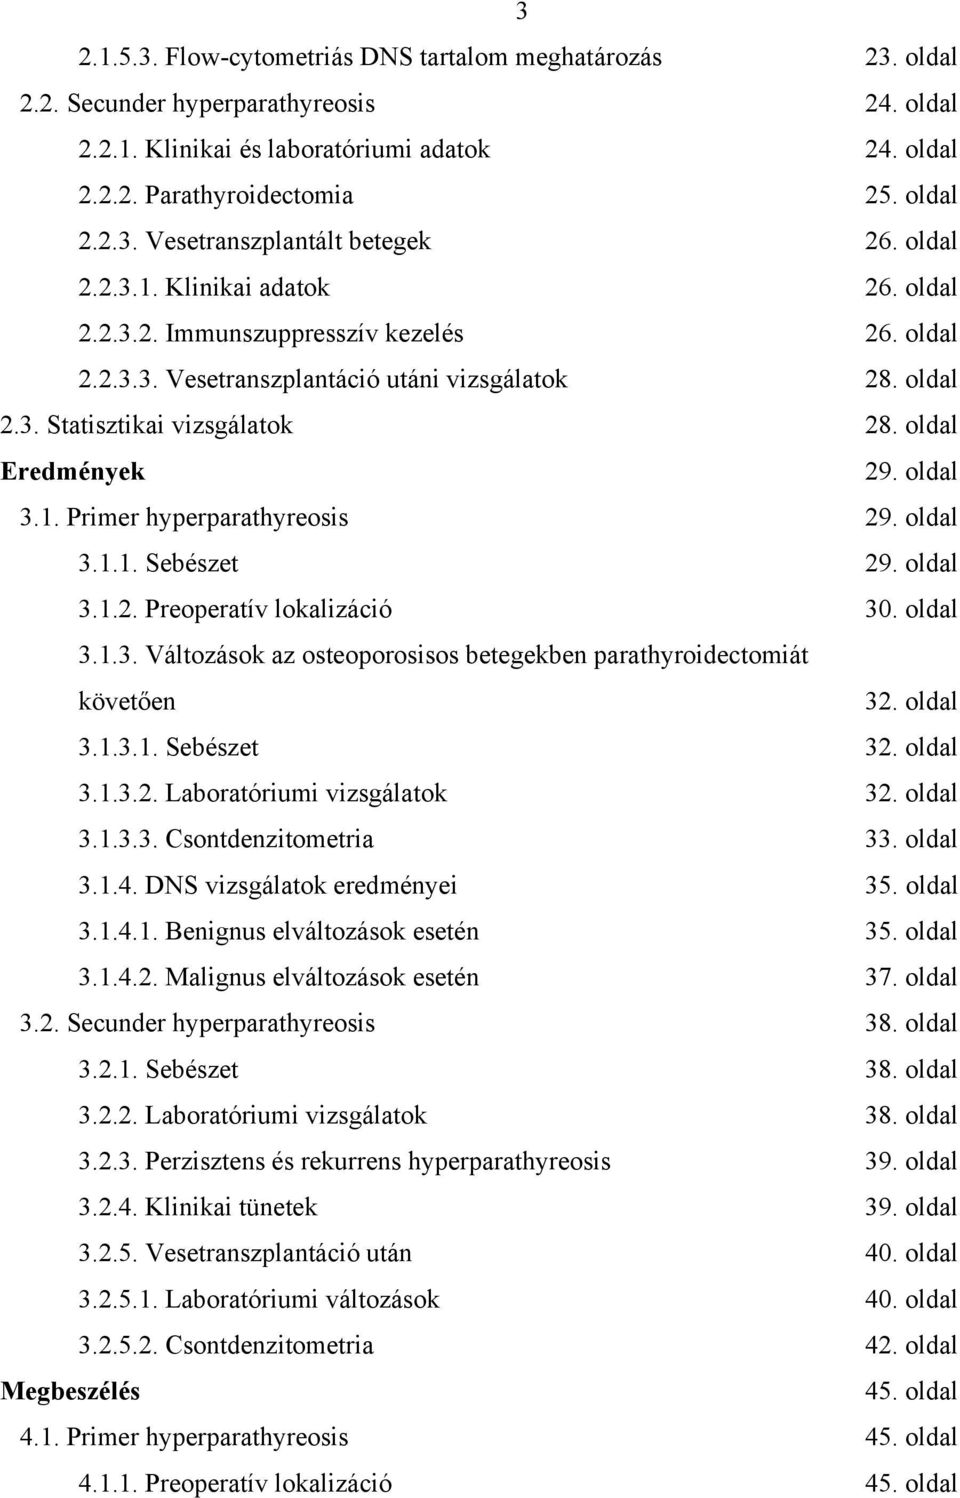 oldal 3.1. Primer hyperparathyreosis 29. oldal 3.1.1. Sebészet 29. oldal 3.1.2. Preoperatív lokalizáció 30. oldal 3.1.3. Változások az osteoporosisos betegekben parathyroidectomiát követ en 32.